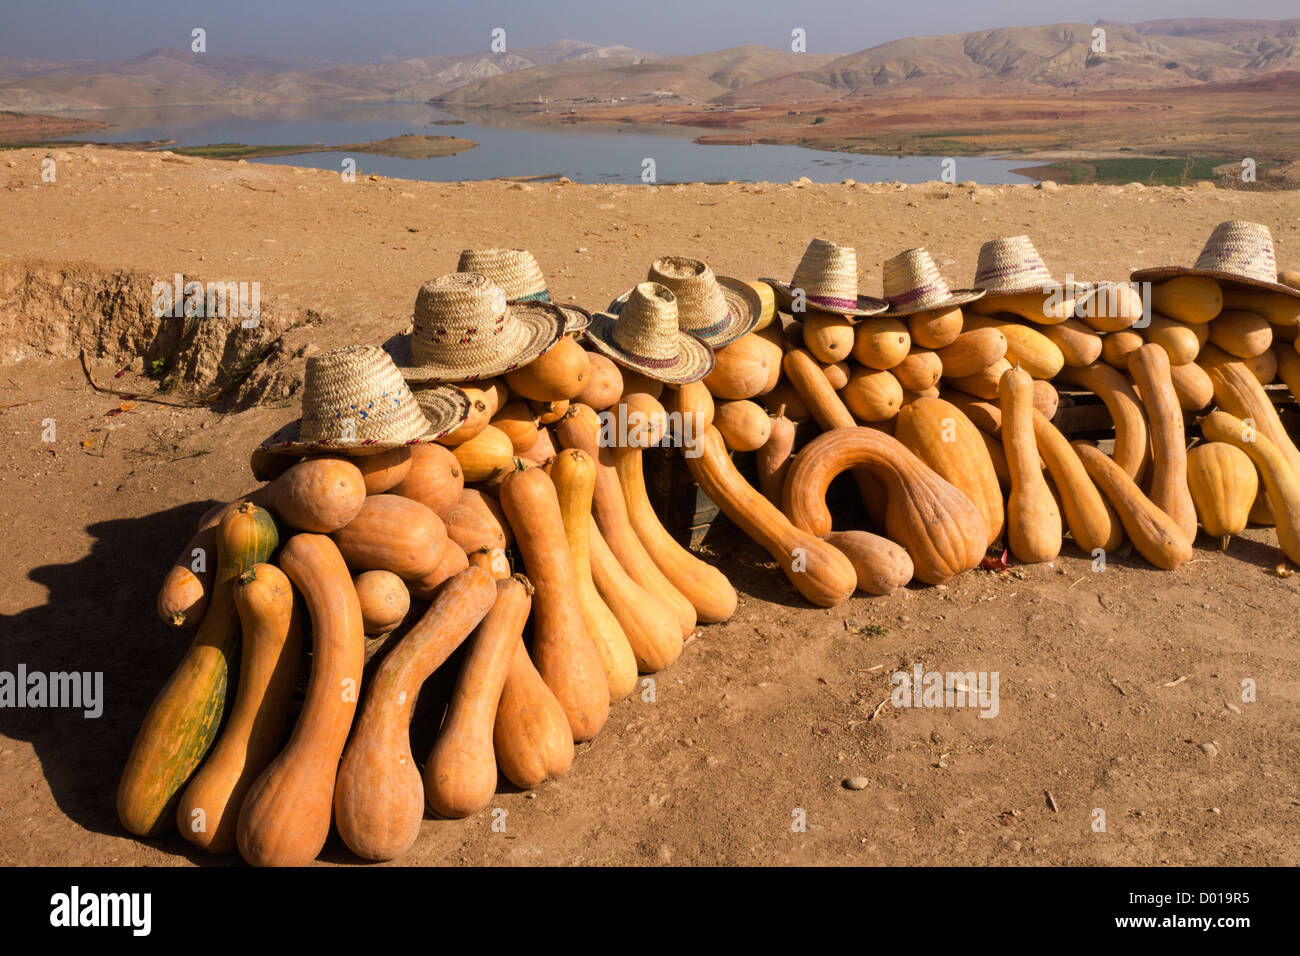 Las calabazas de portadores de agua del desierto Foto de stock